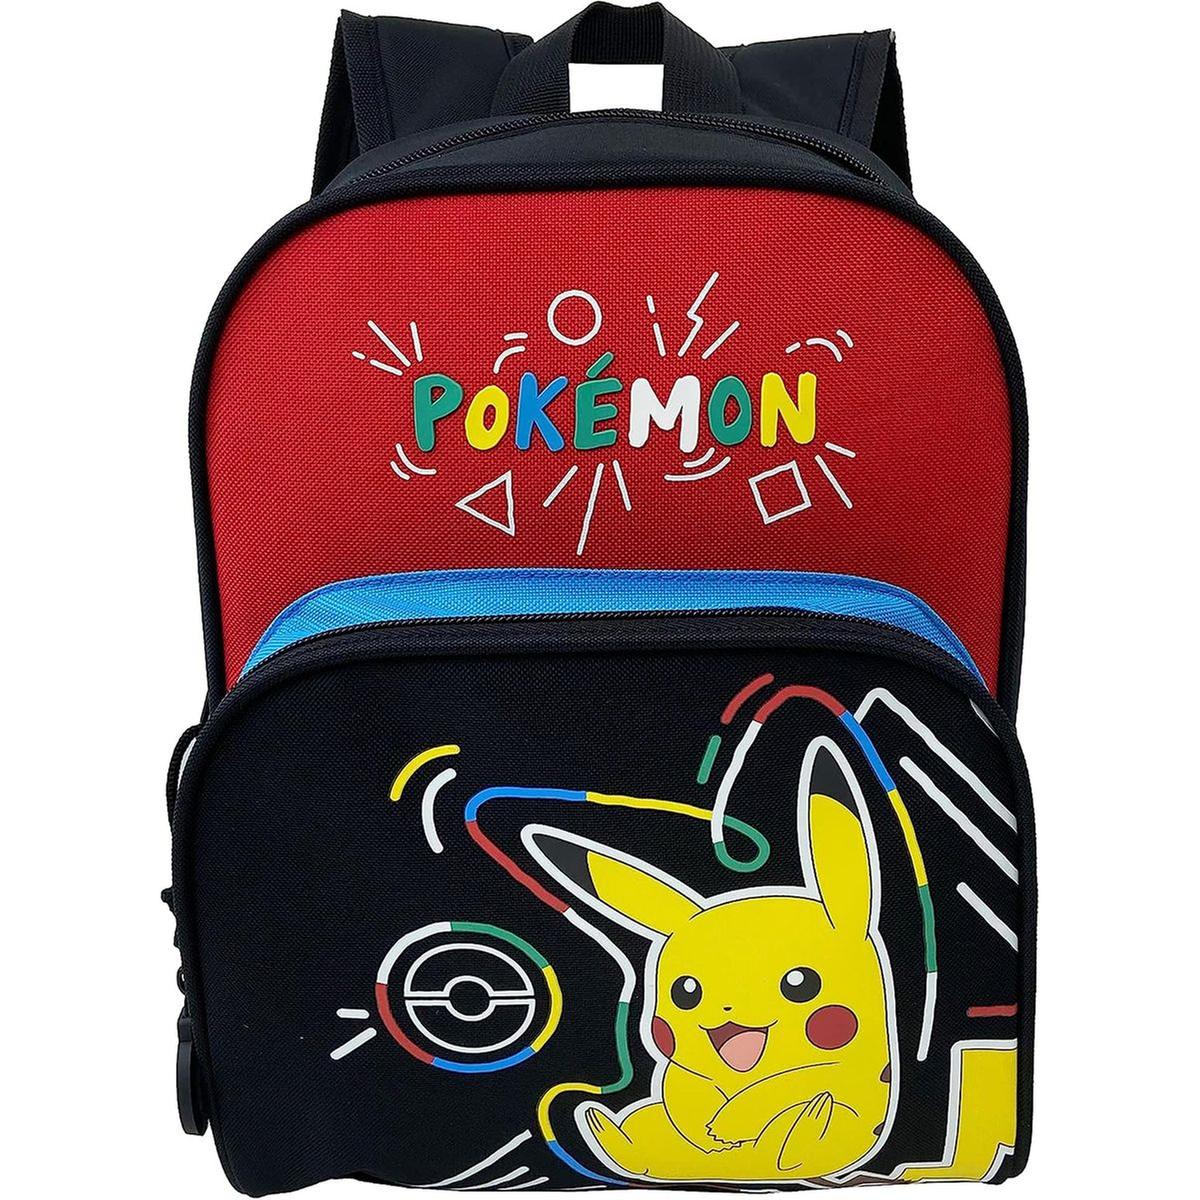 Play - Pokemon - Mochila escolar Pokémon 30 cm con estampado colorido y  Pikachu | Pokemon | Toys"R"Us España